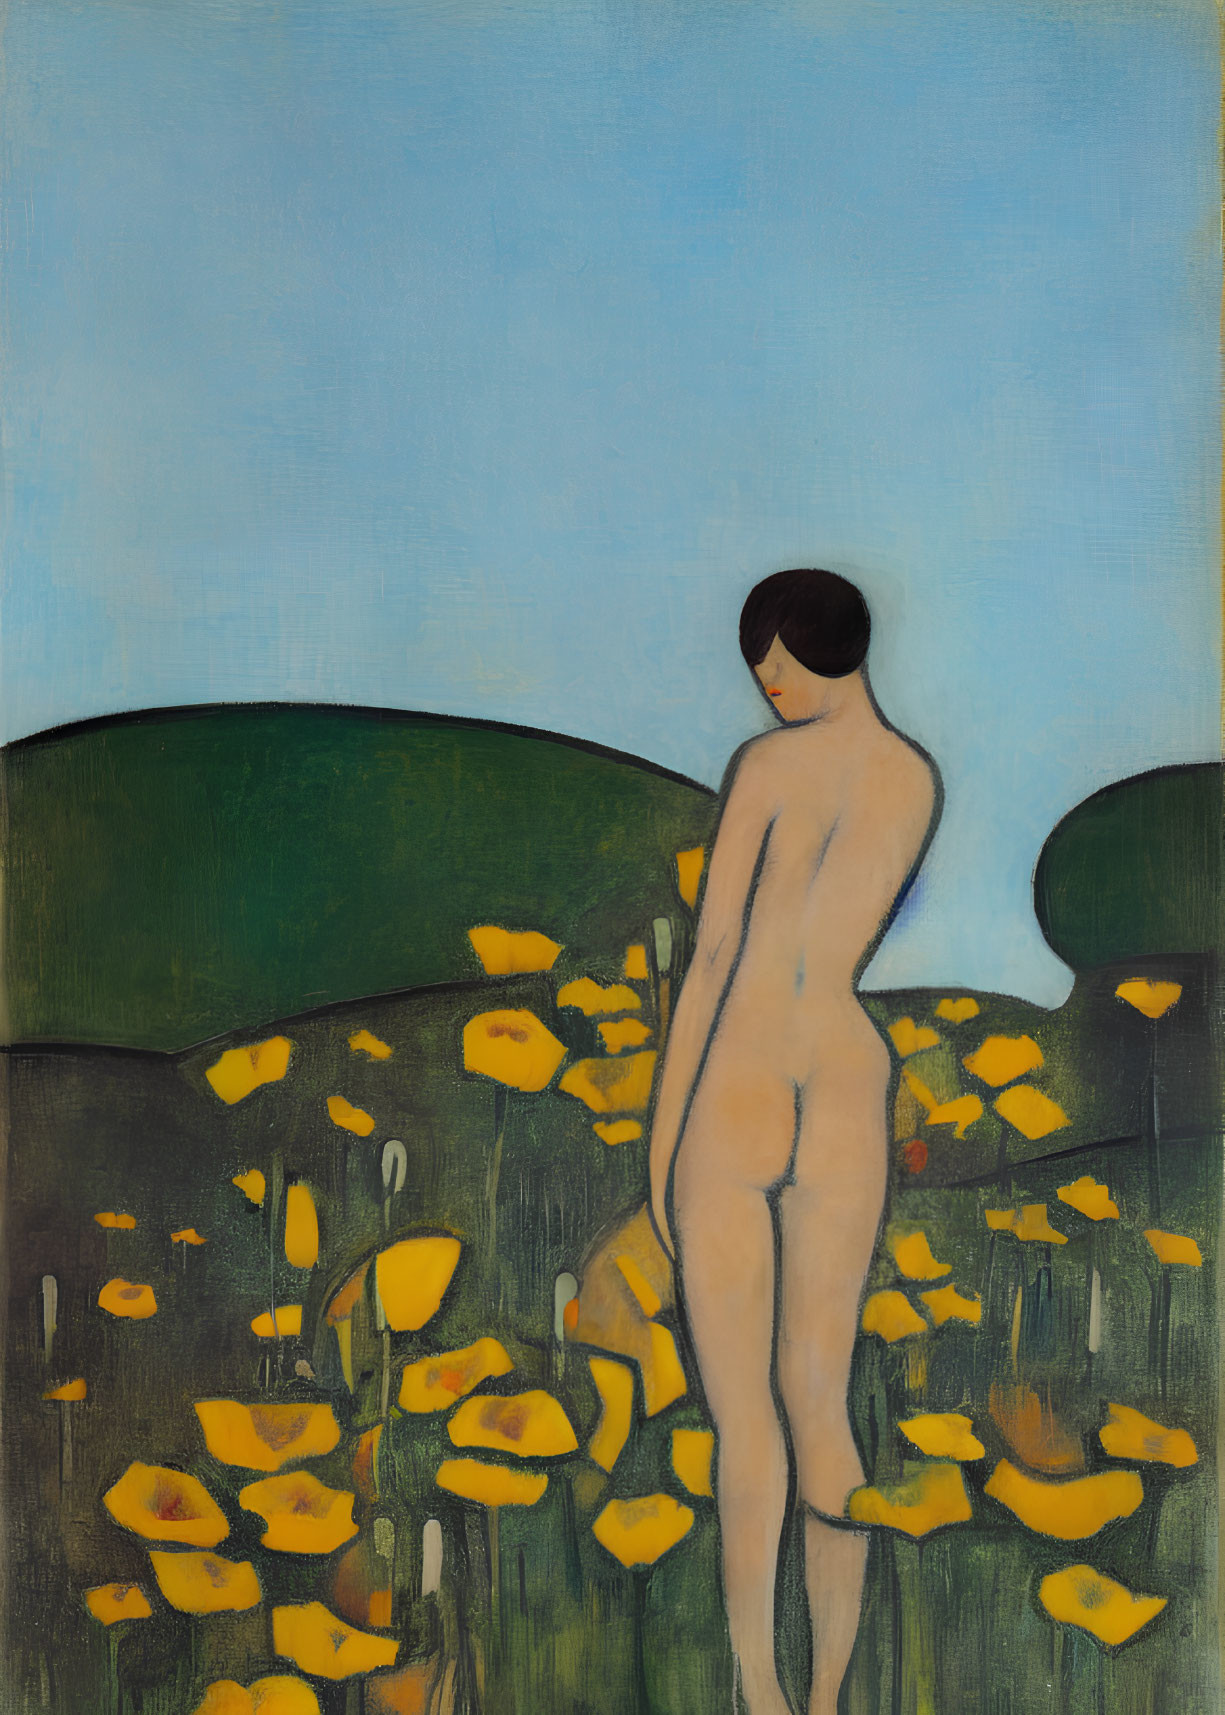 Nude woman in yellow flower field under blue sky